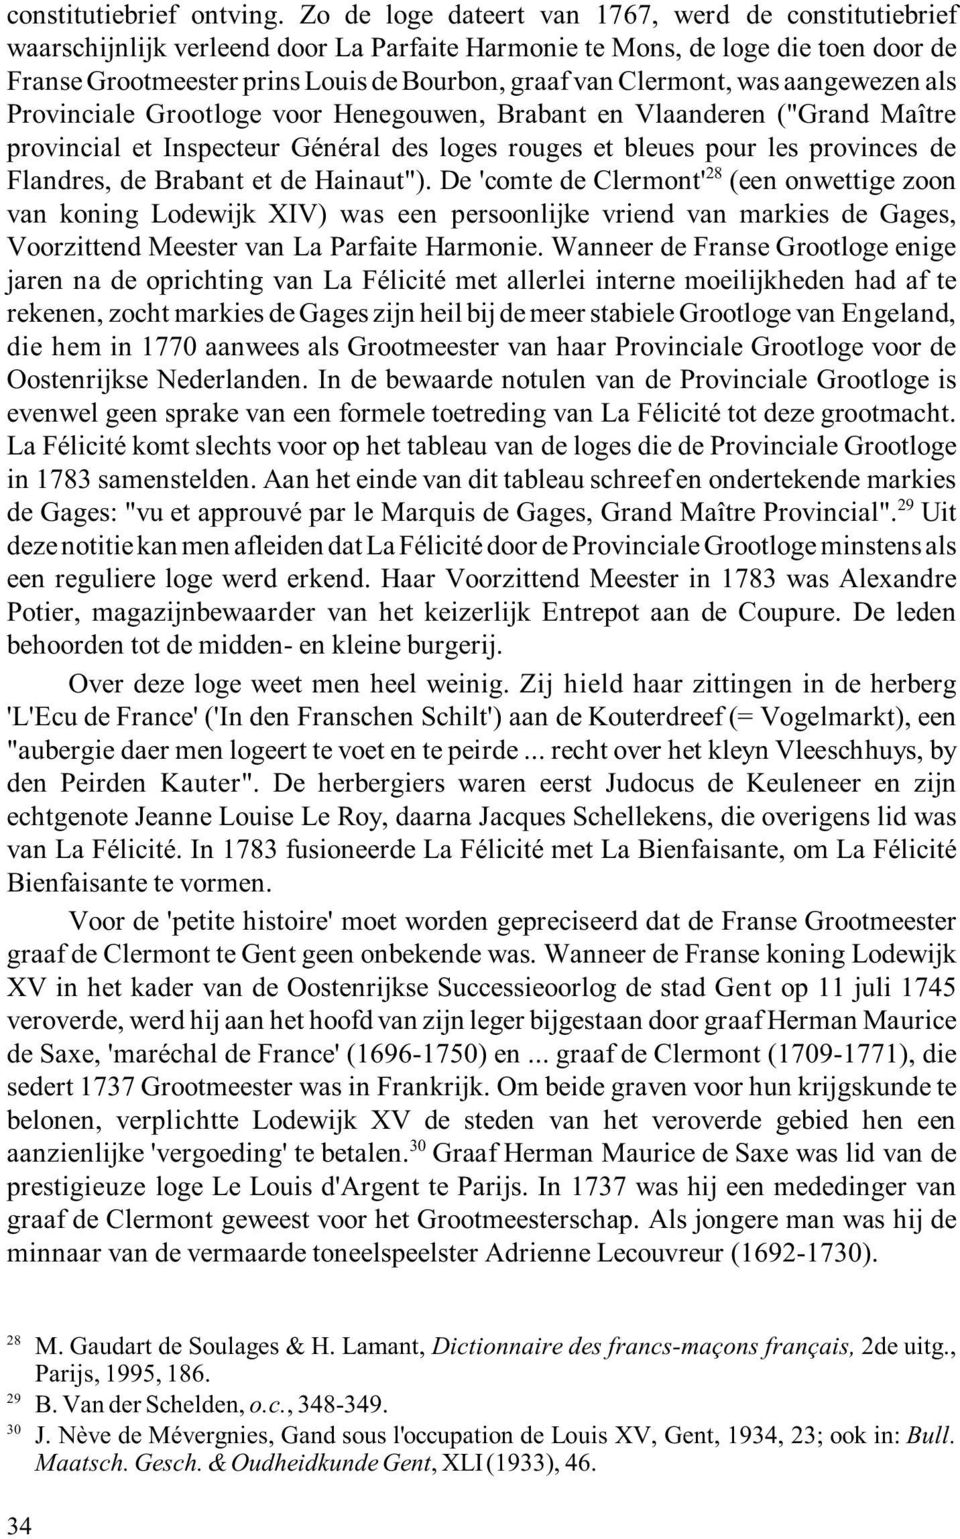 Clermont, was aangewezen als Provinciale Grootloge voor Henegouwen, Brabant en Vlaanderen ("Grand Maître provincial et Inspecteur Général des loges rouges et bleues pour les provinces de 28 Flandres,